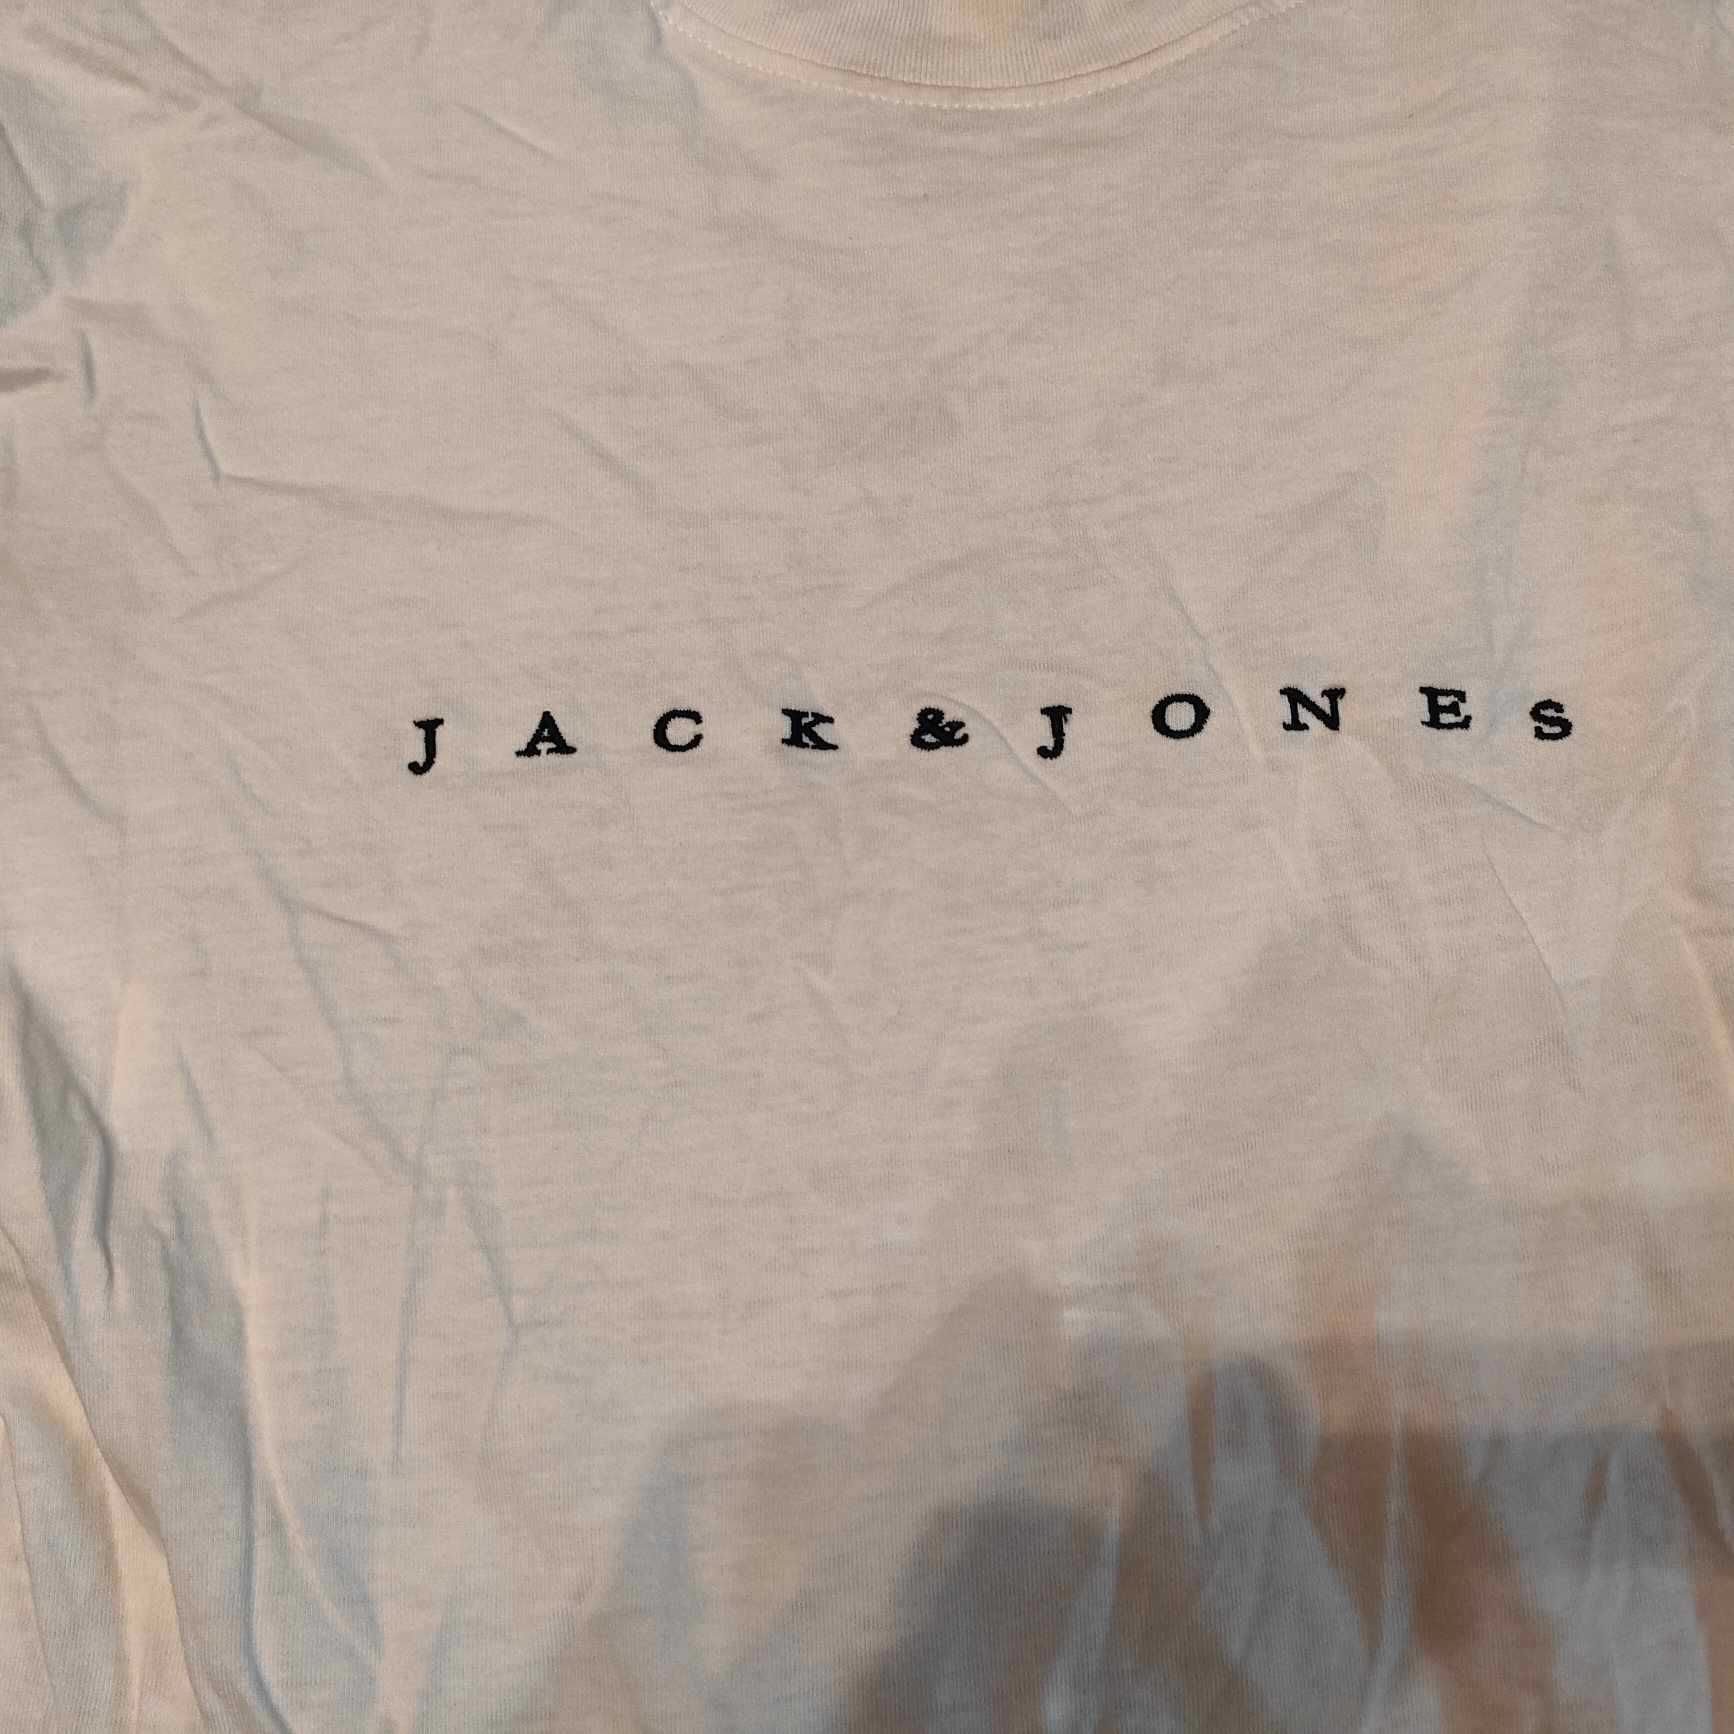 Koszulka Jack & Jones rozmiar XS stan idealny, Okazja!